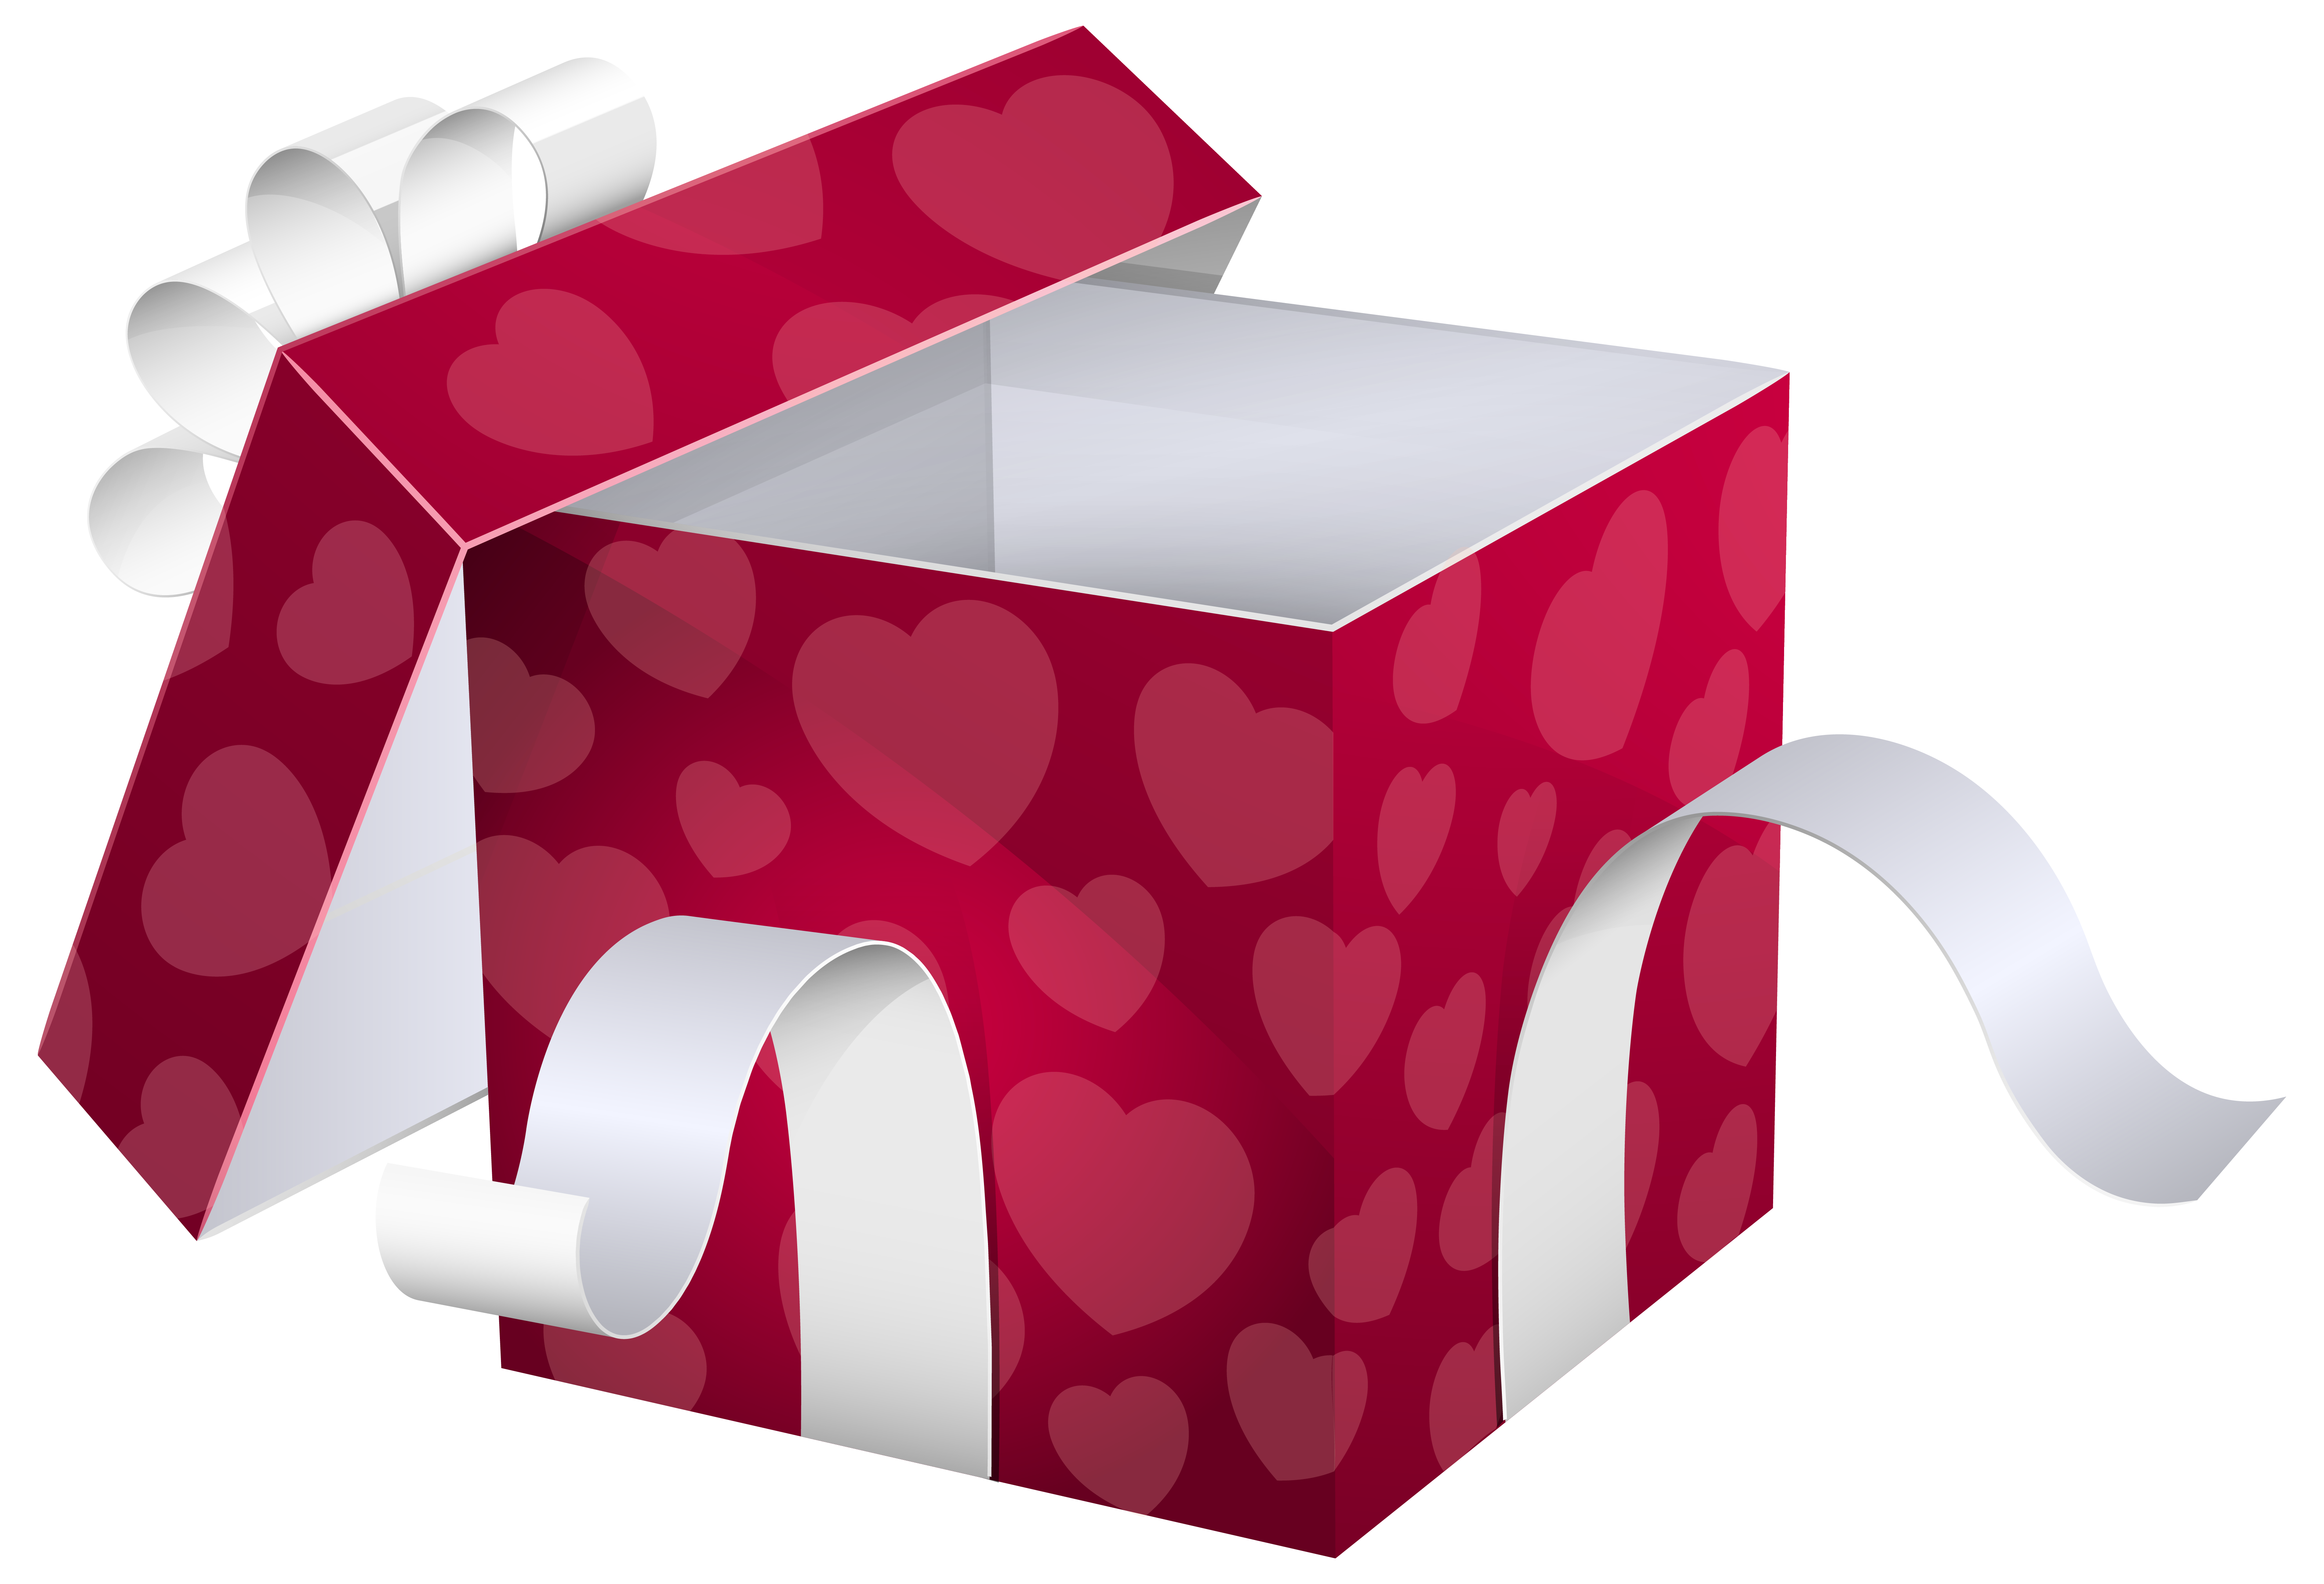 Premium Vector | Open gift box with confetti burst surprise present